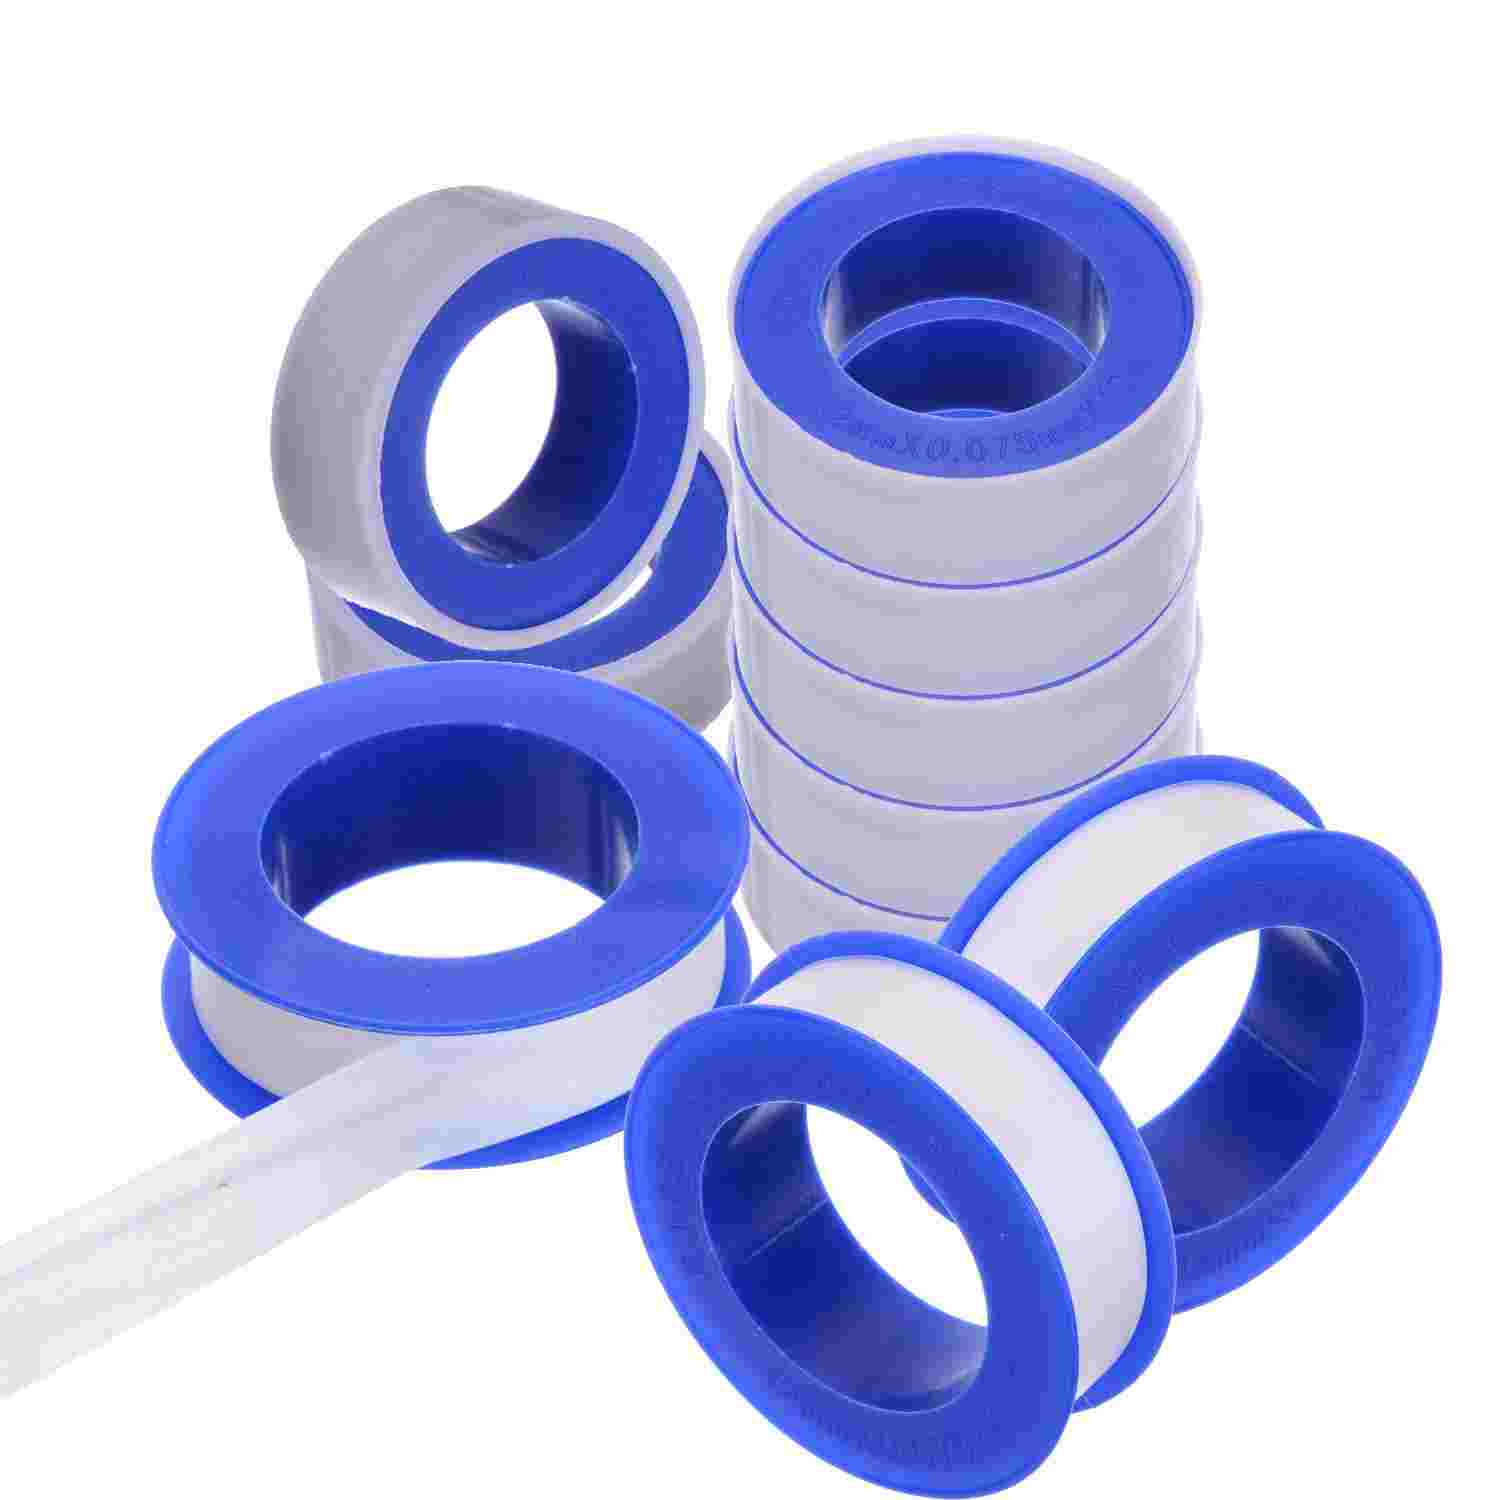 Tefflon tape for plumbing work